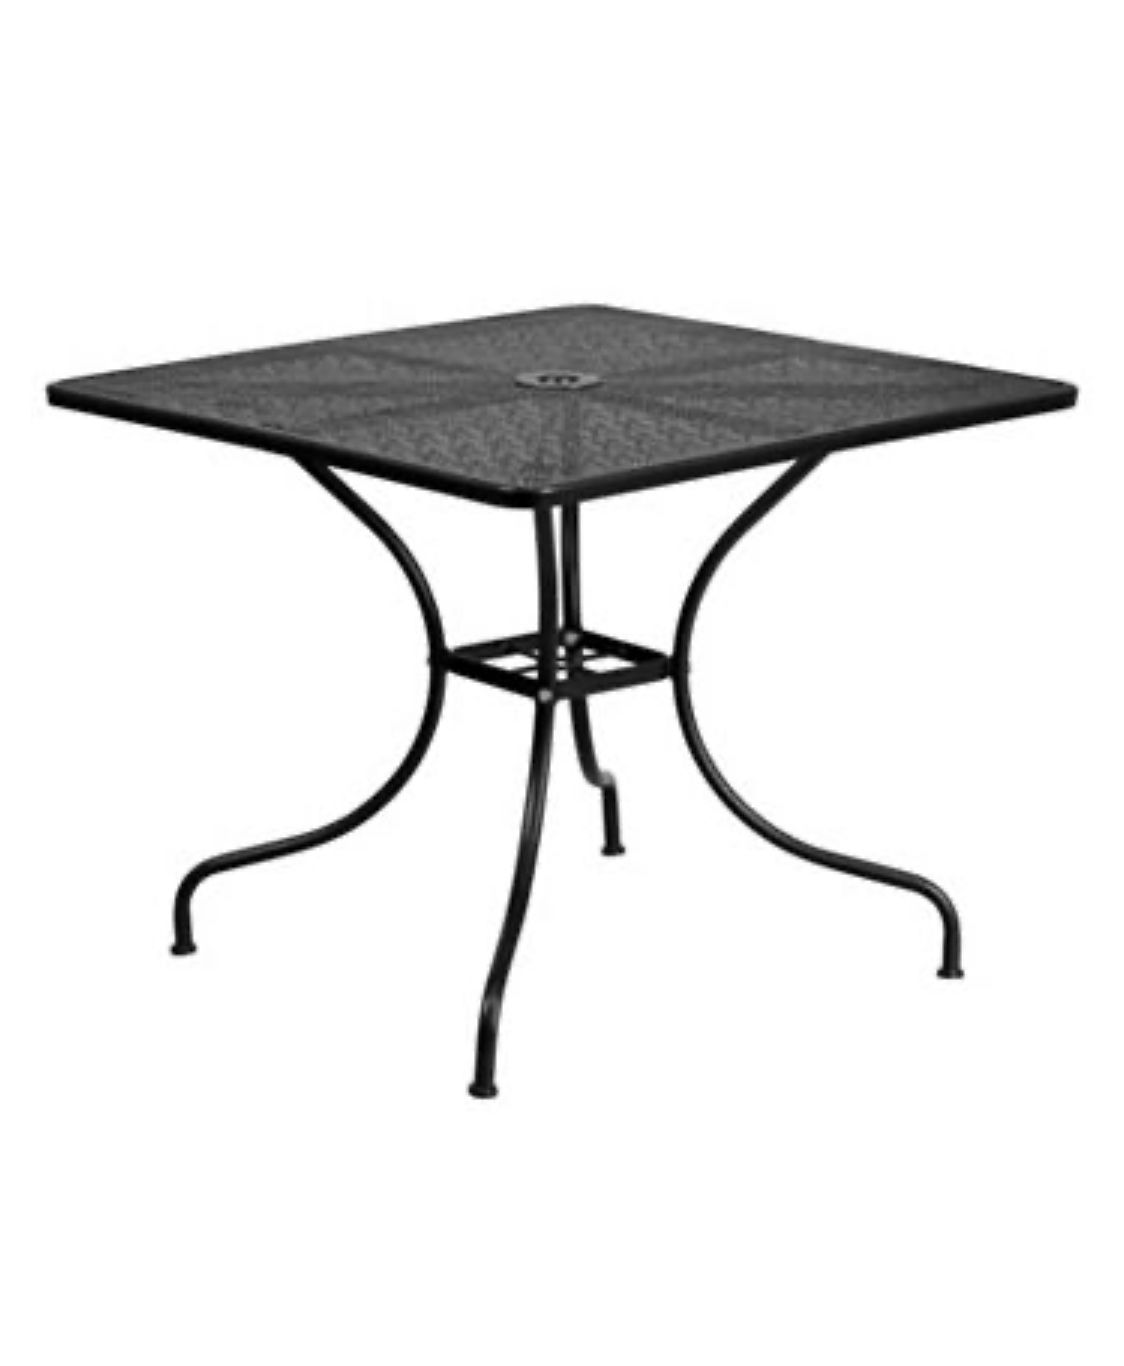 Black mesh top steel table